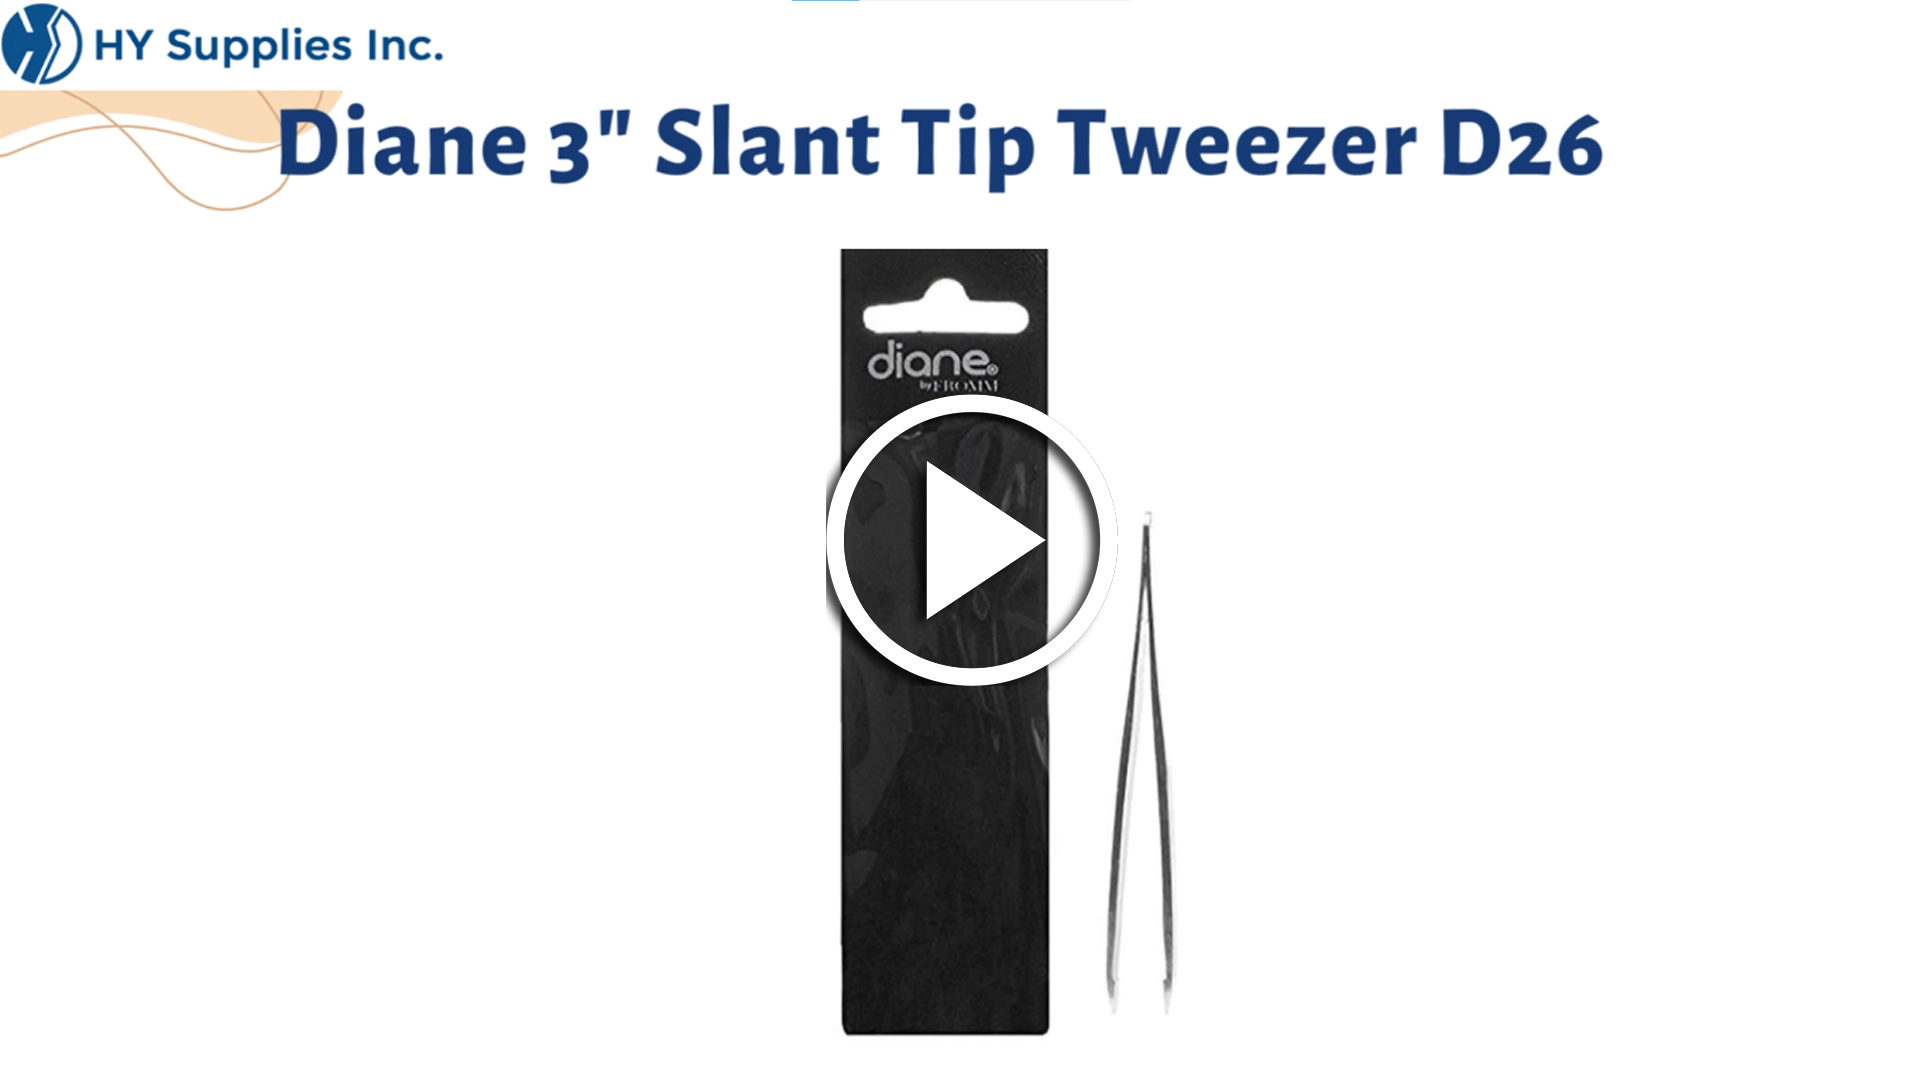 Diane 3" Slant Tip Tweezer D26